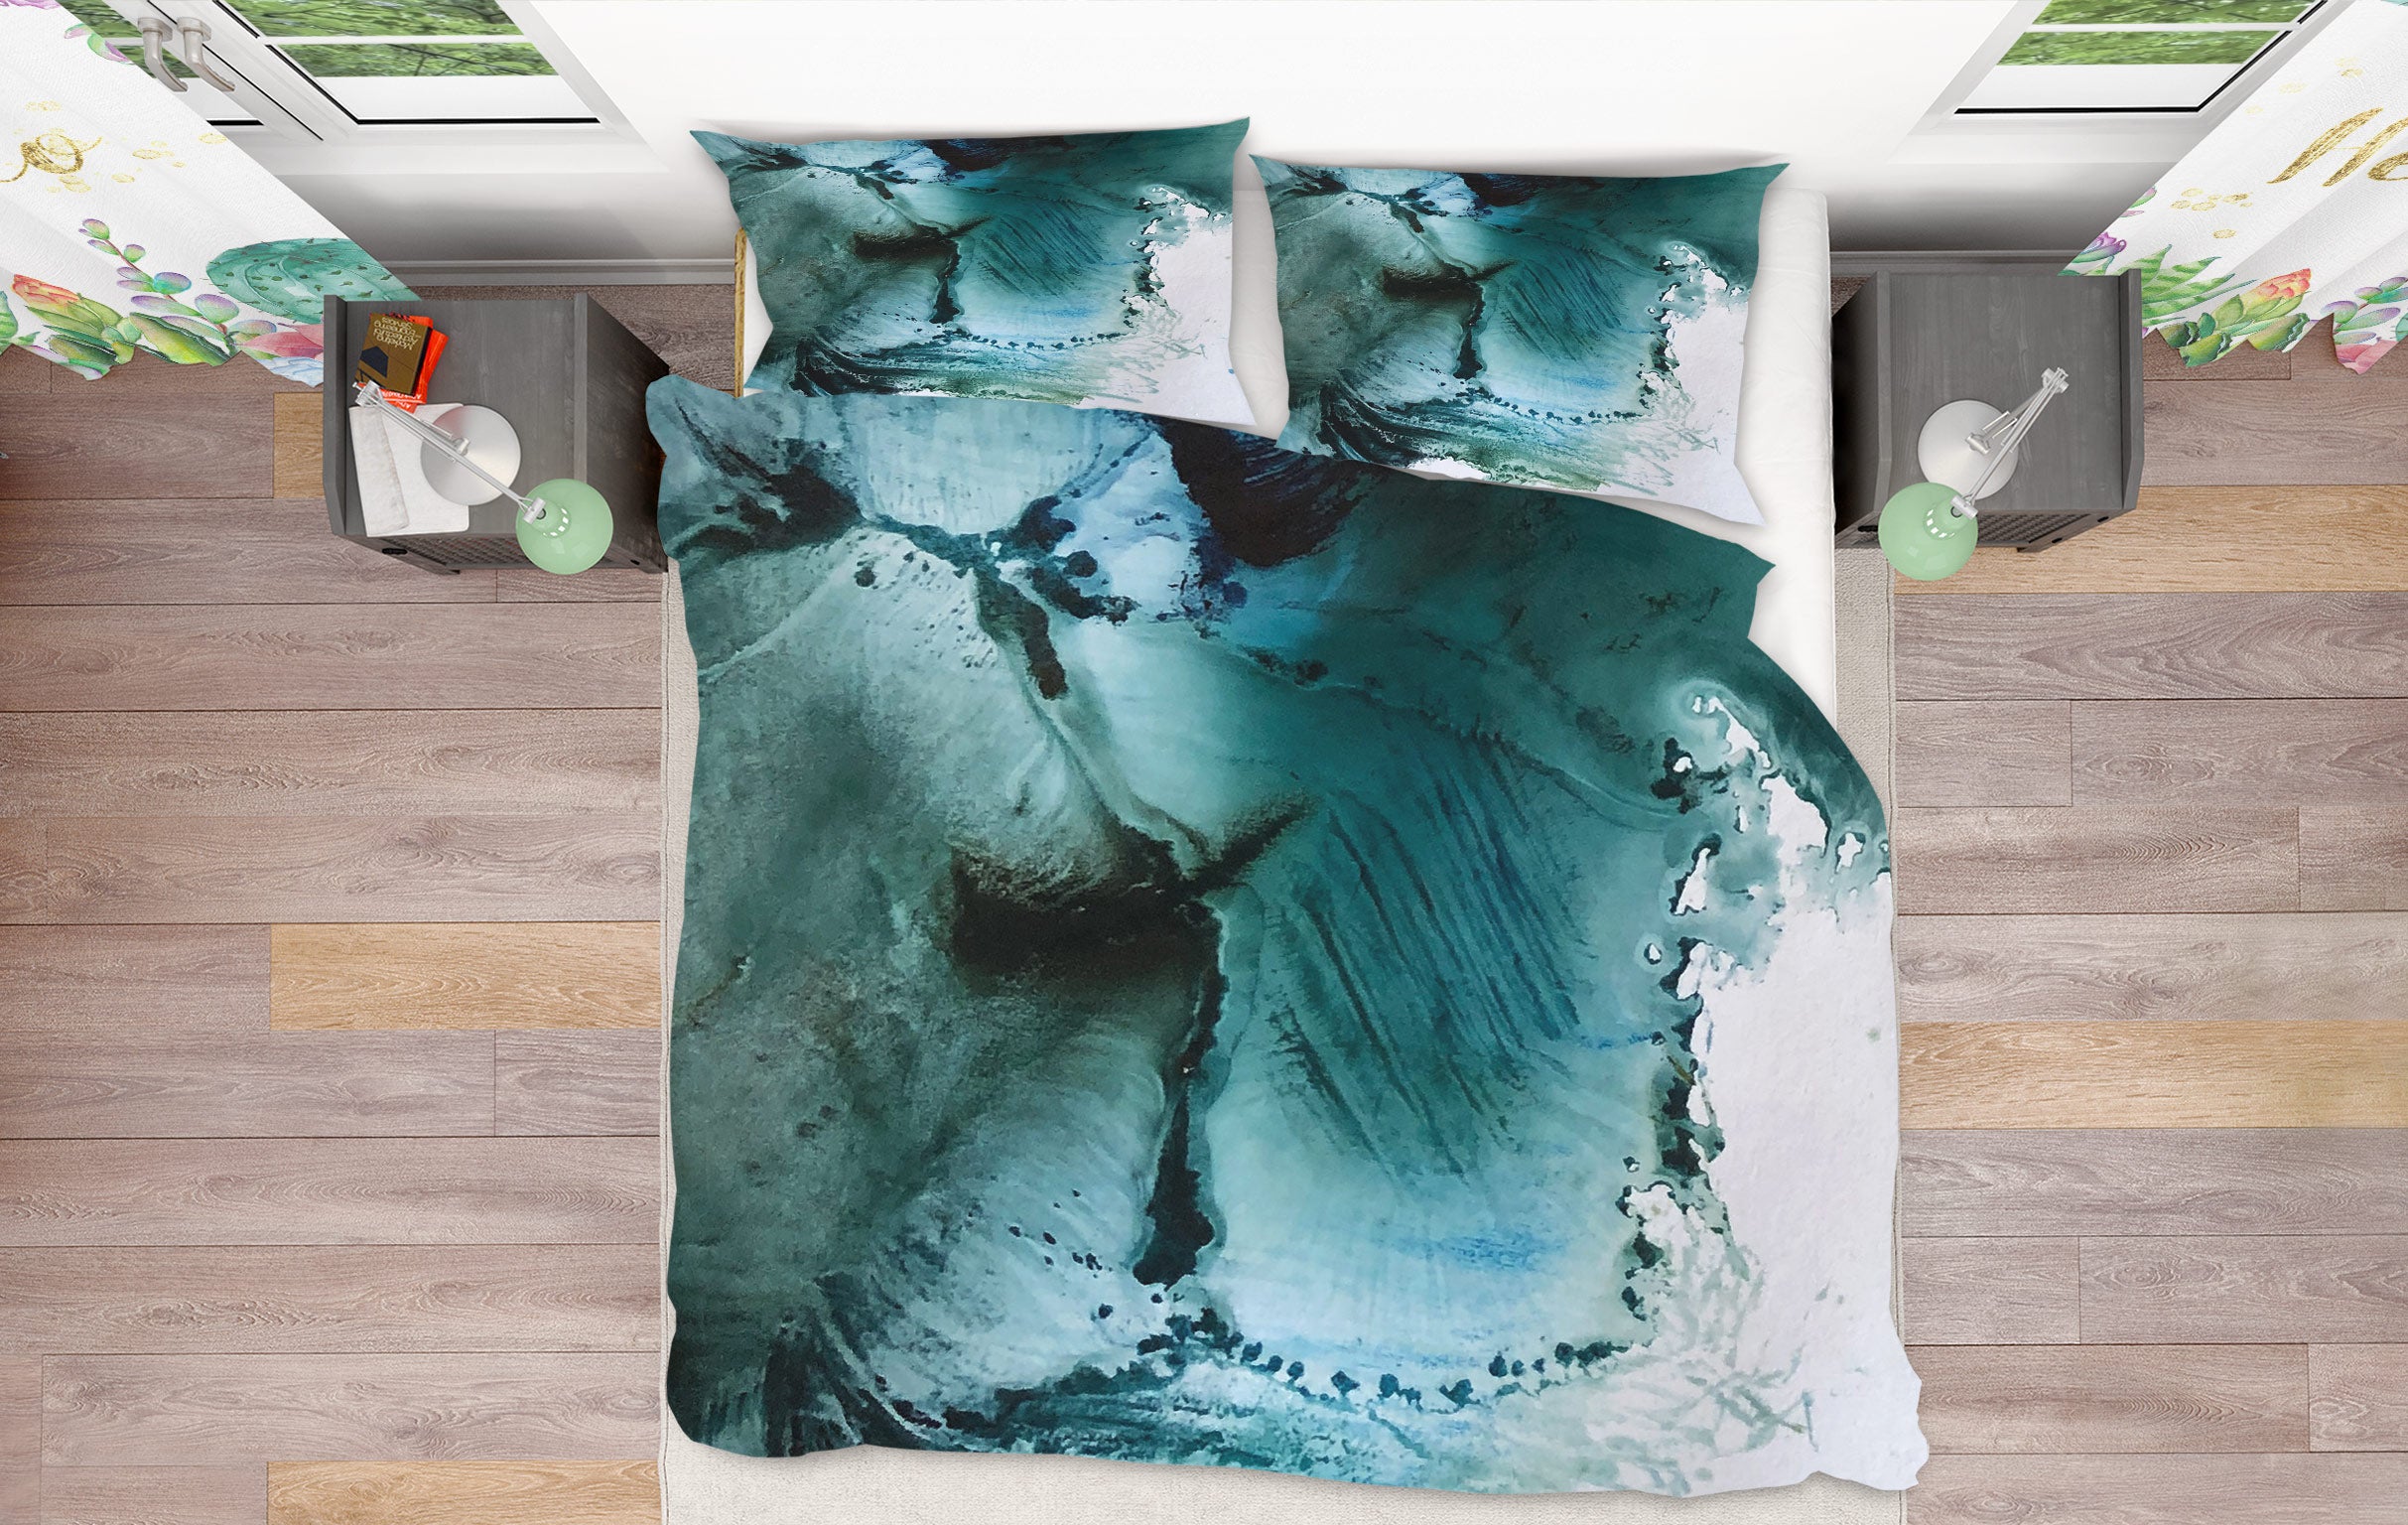 3D Aqua Blue 479 Skromova Marina Bedding Bed Pillowcases Quilt